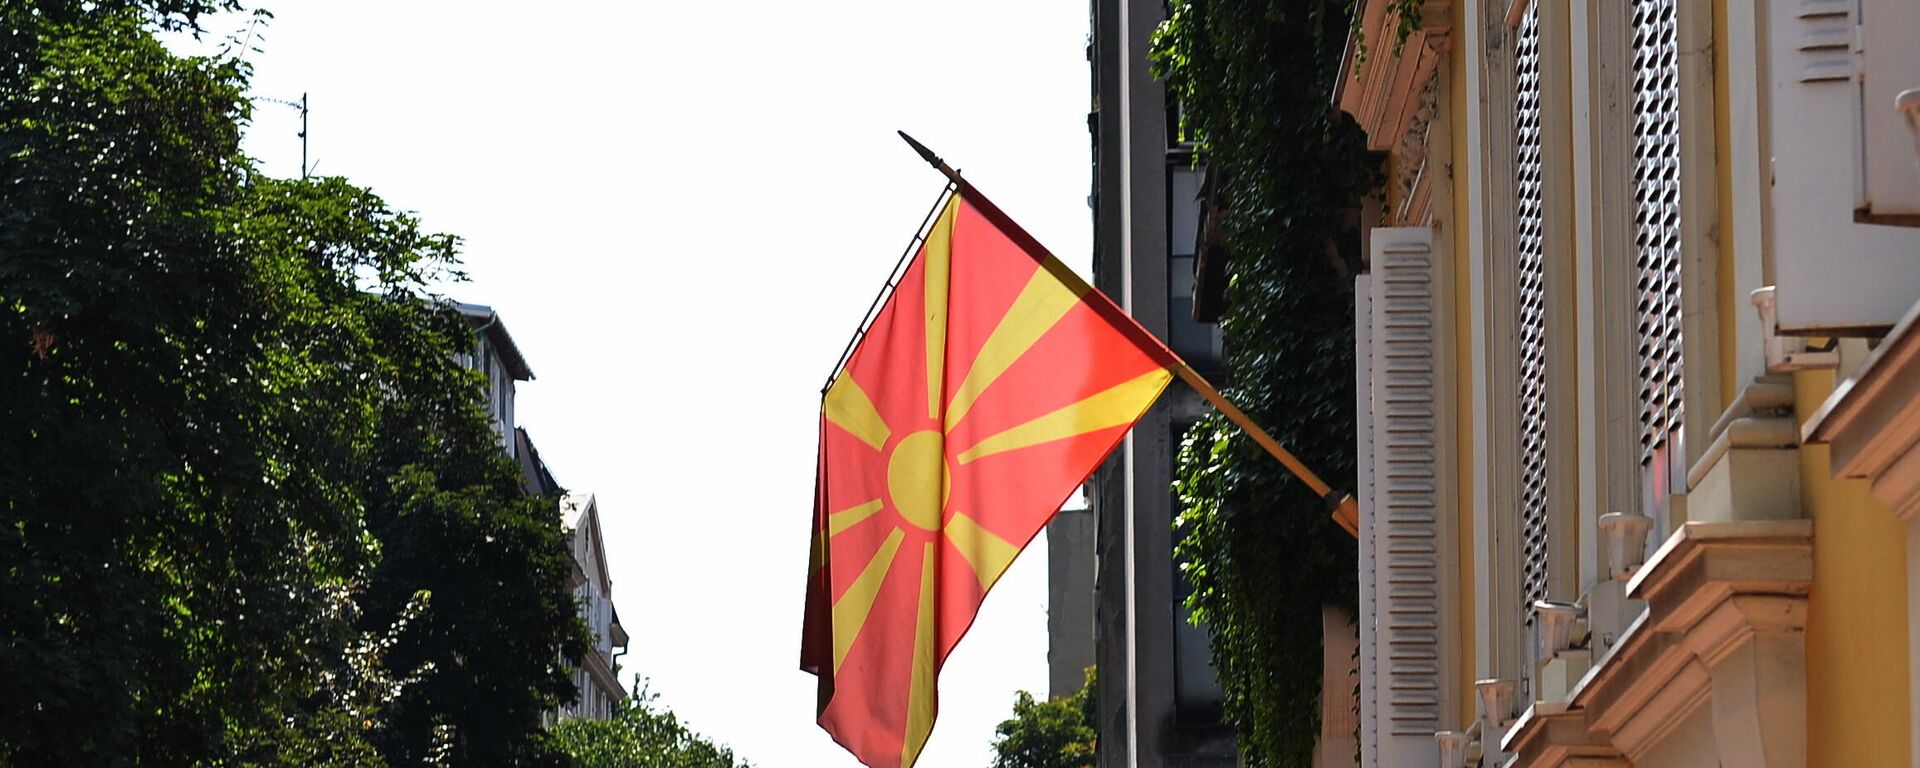 Застава Македоније на згради амбасаде - Sputnik Србија, 1920, 18.08.2021